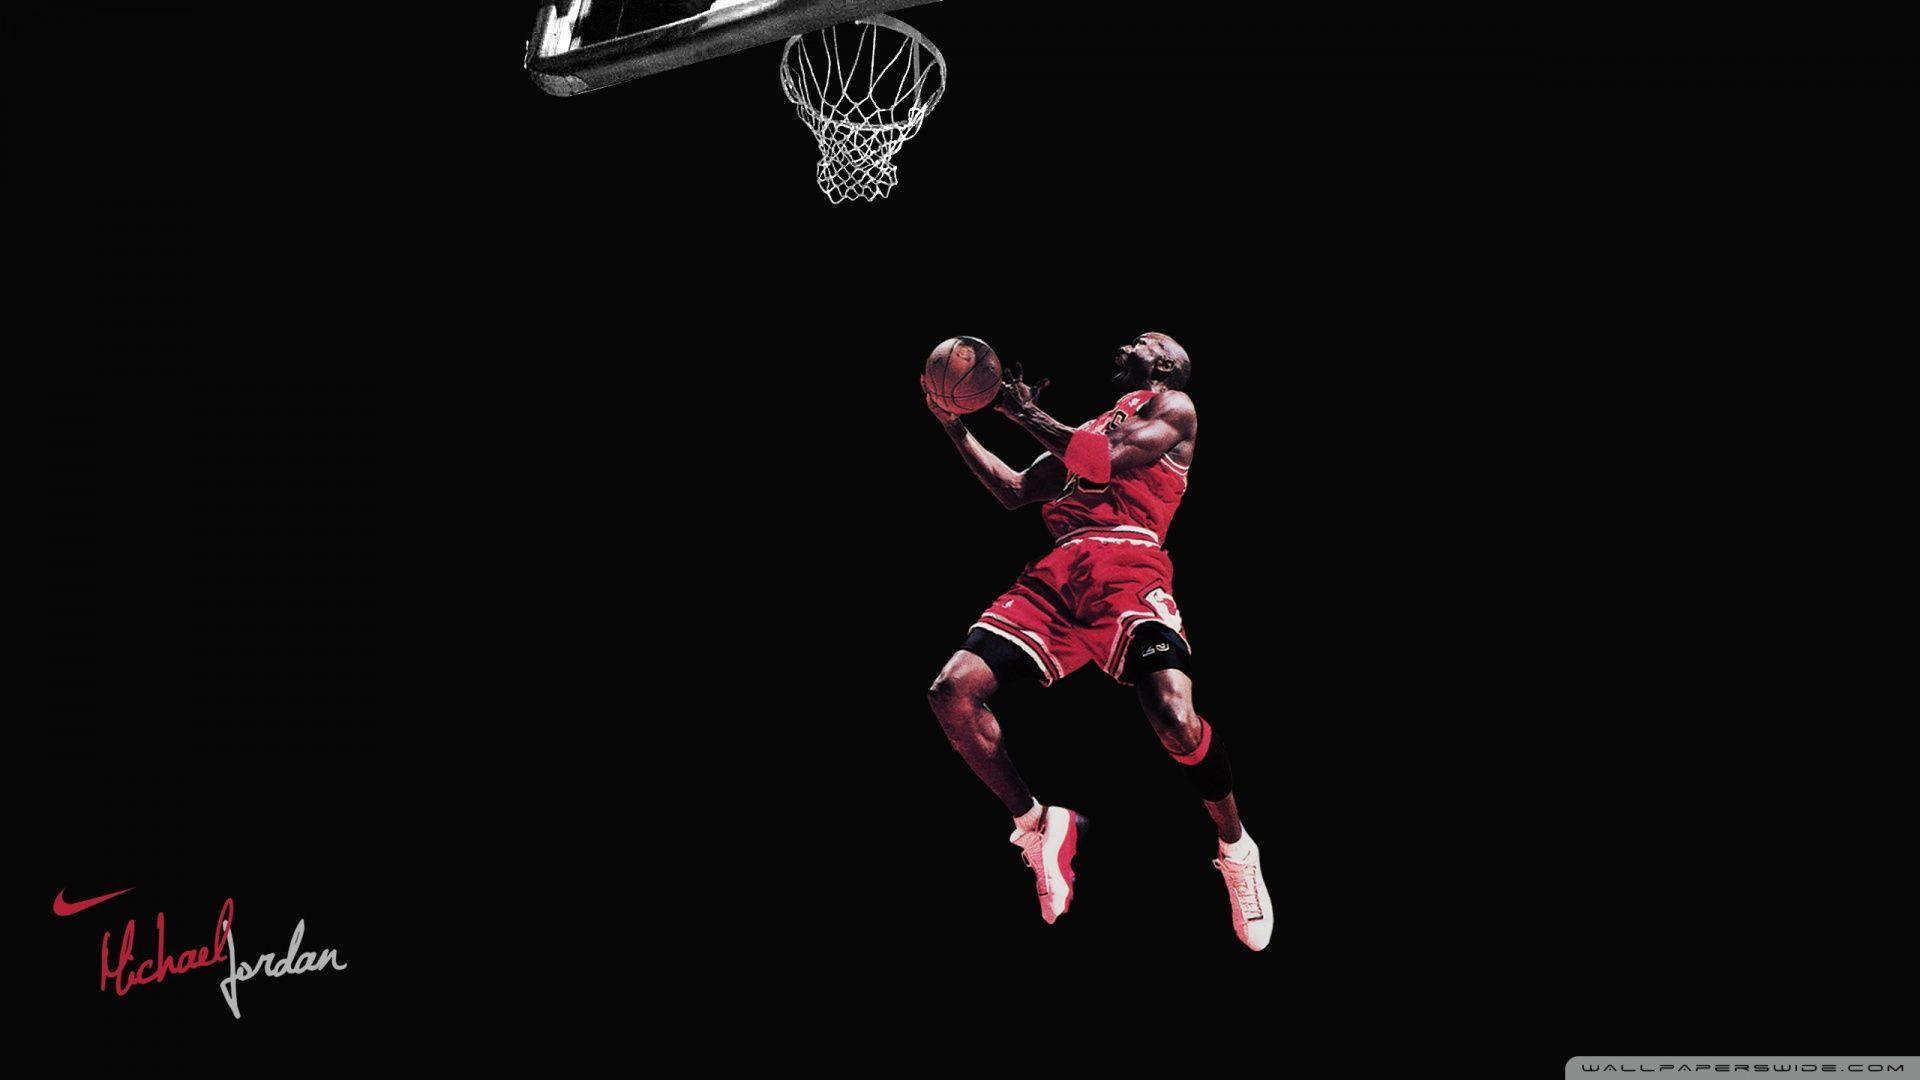 Michael Jordan Wallpaper 20 - Best Wallpaper Collection